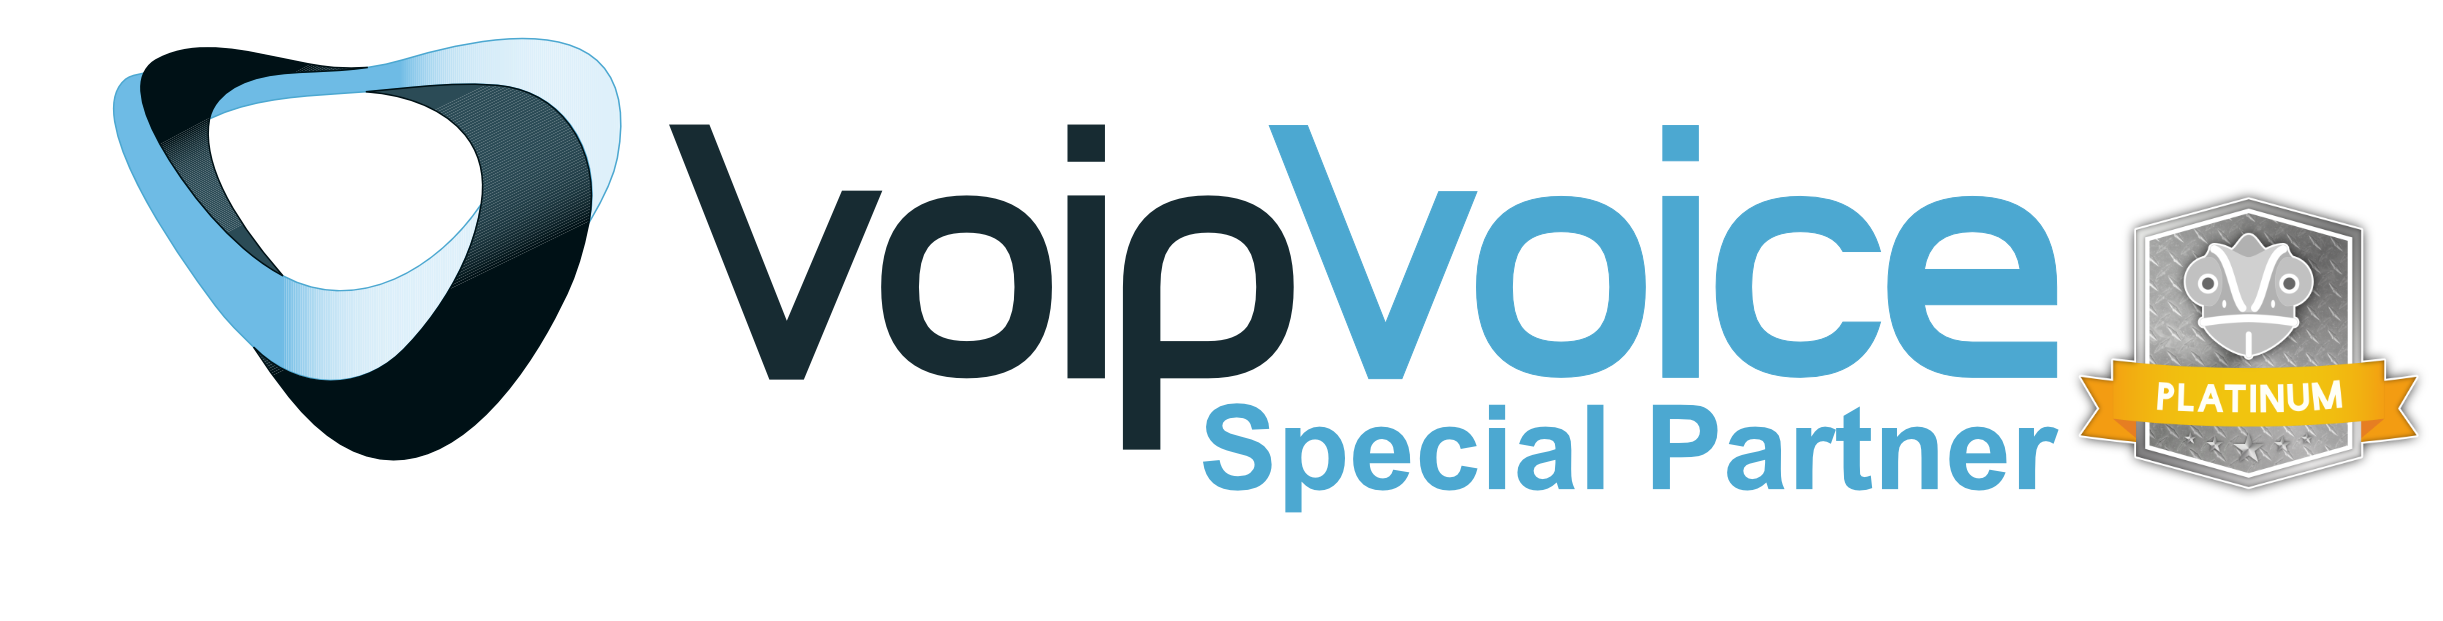 logoVoipVoice partner